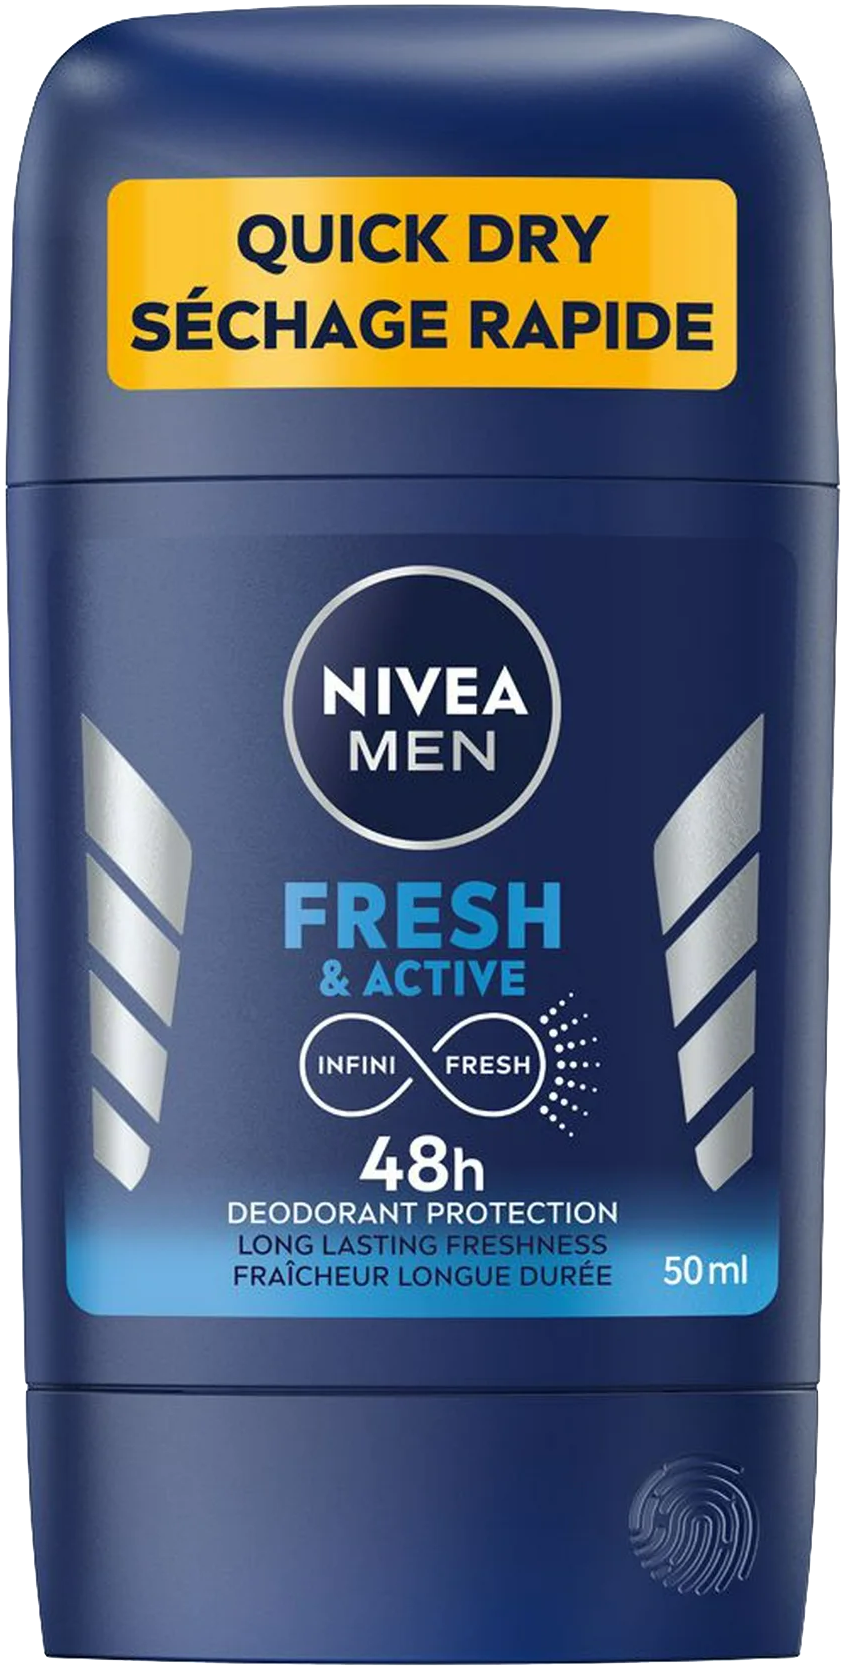 Nivea Men Fresh & Active Deodorant (50ML) - Quecan